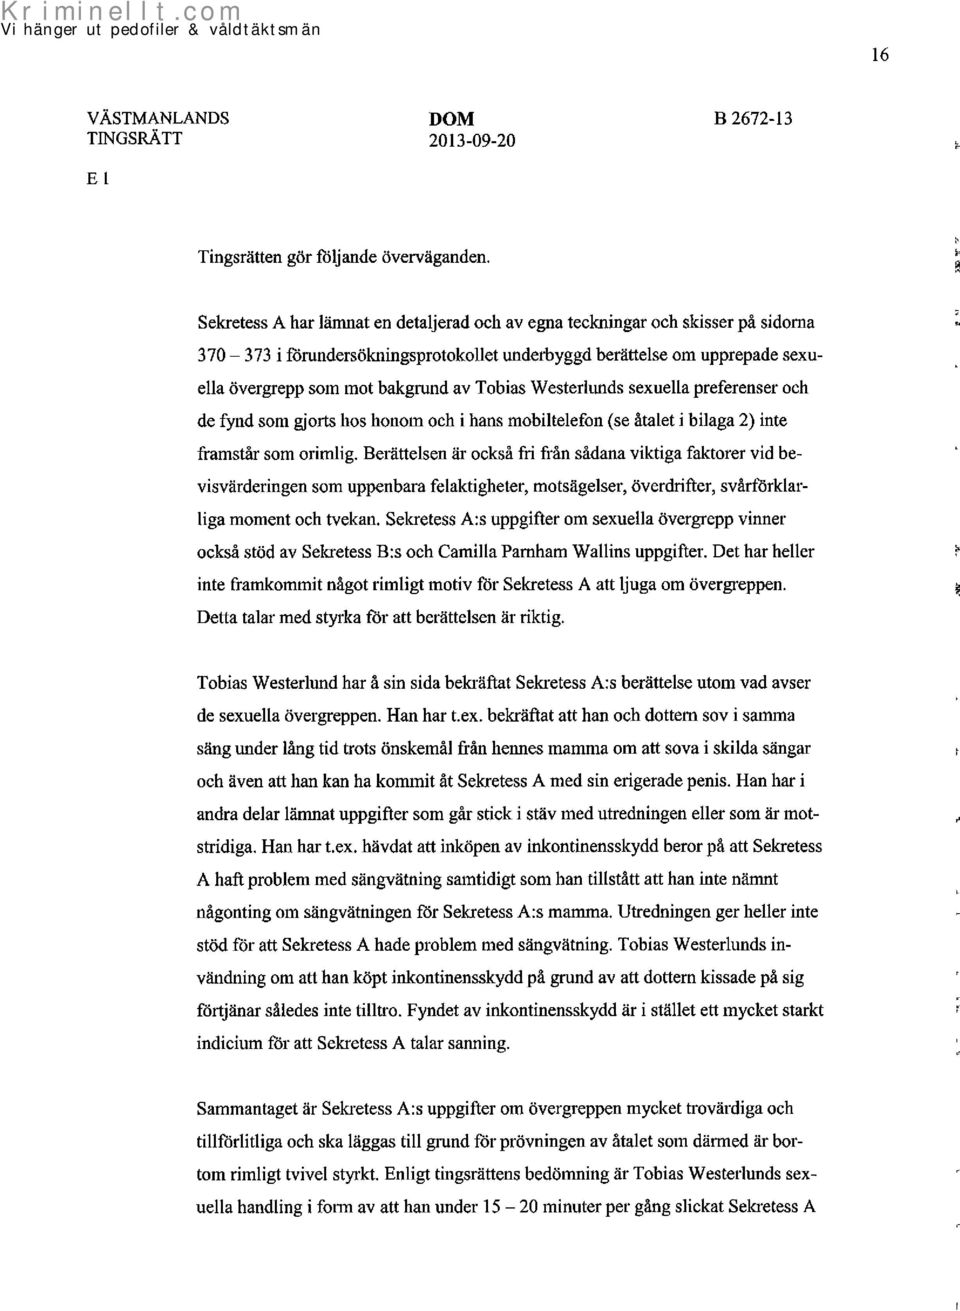 Tobias Westerlunds sexuella preferenser och de fynd som gjorts hos honom och i hans mobiltelefon (se åtalet i bilaga 2) inte framstår som orimlig.